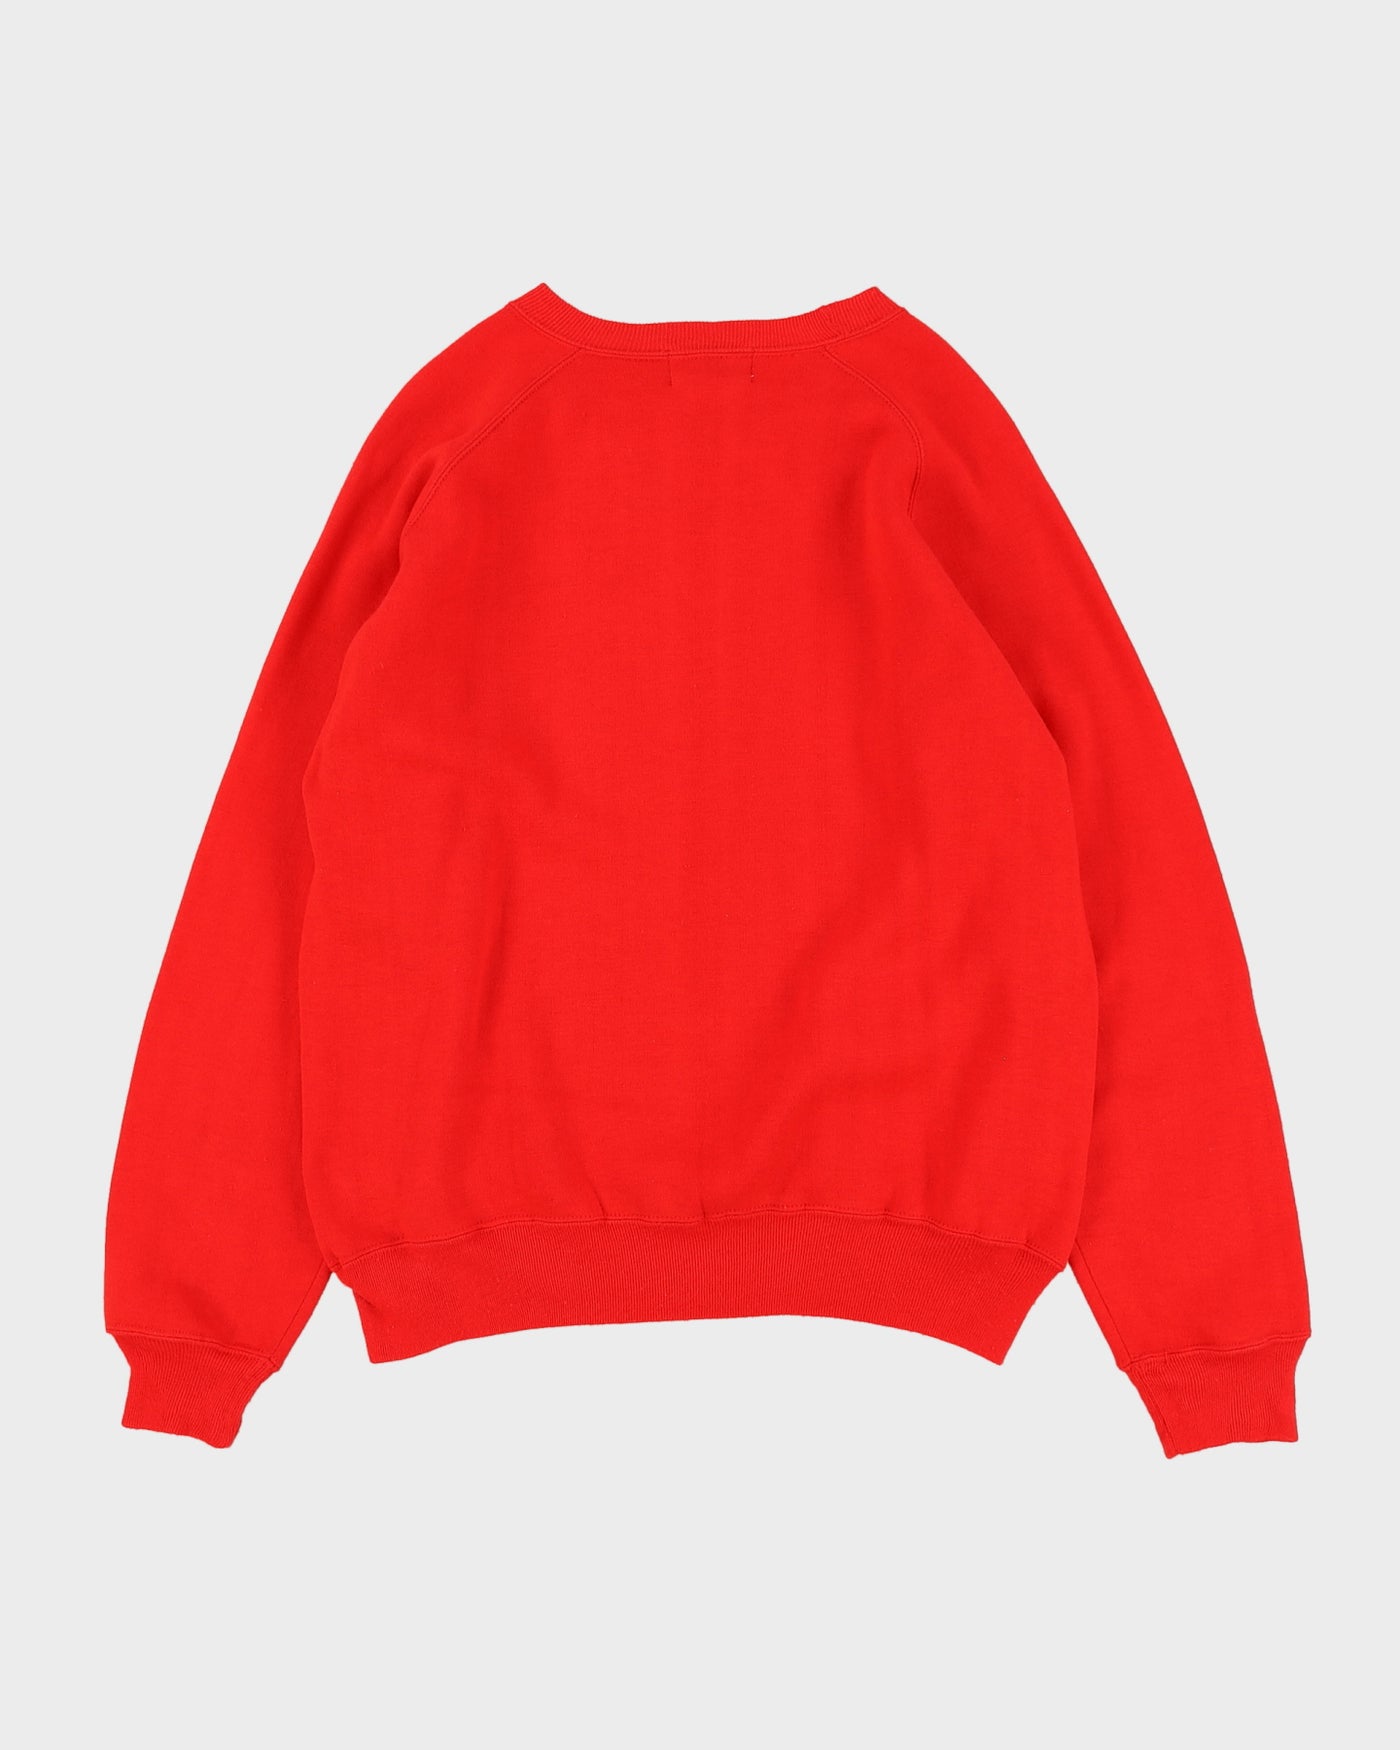 Vintage 70s Red Active Sport Crewneck Sweatshirt- L